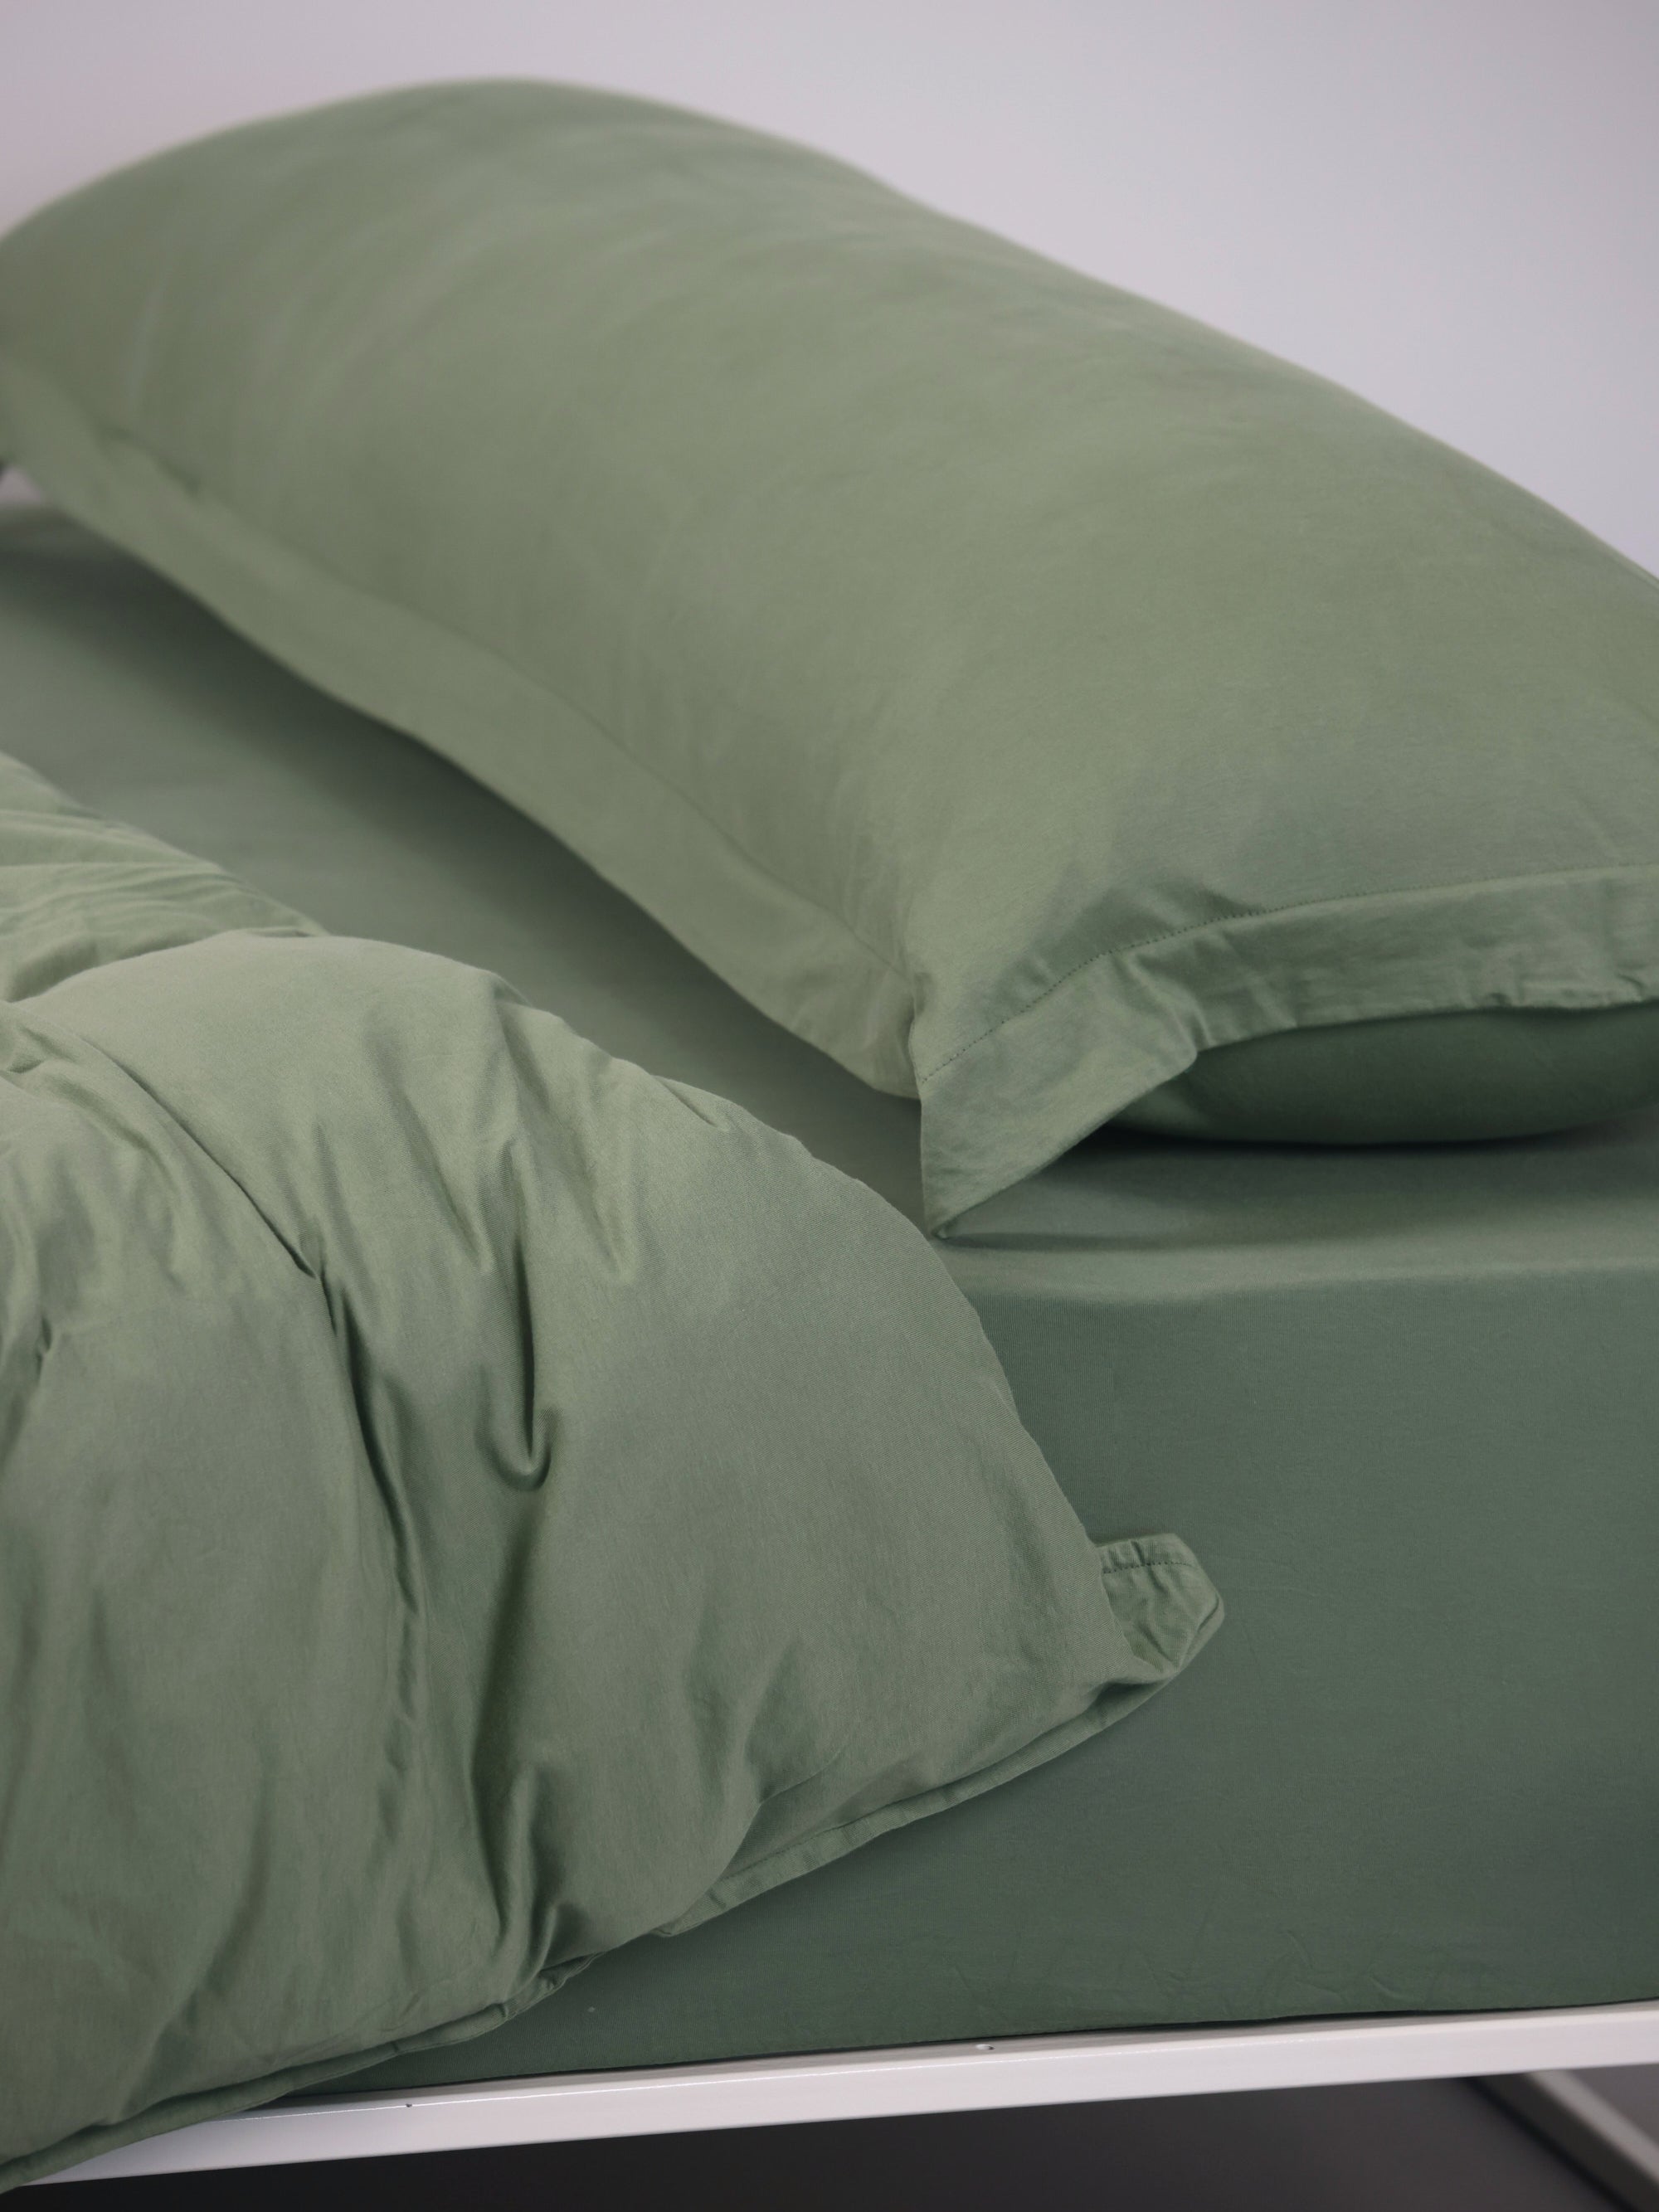 ראש מיטת ברזל לבנה עם סדין, שמיכת פוך, כרית וציפית לכרית ארוכה בצבע ערבה בחדר עם קירות אפורים